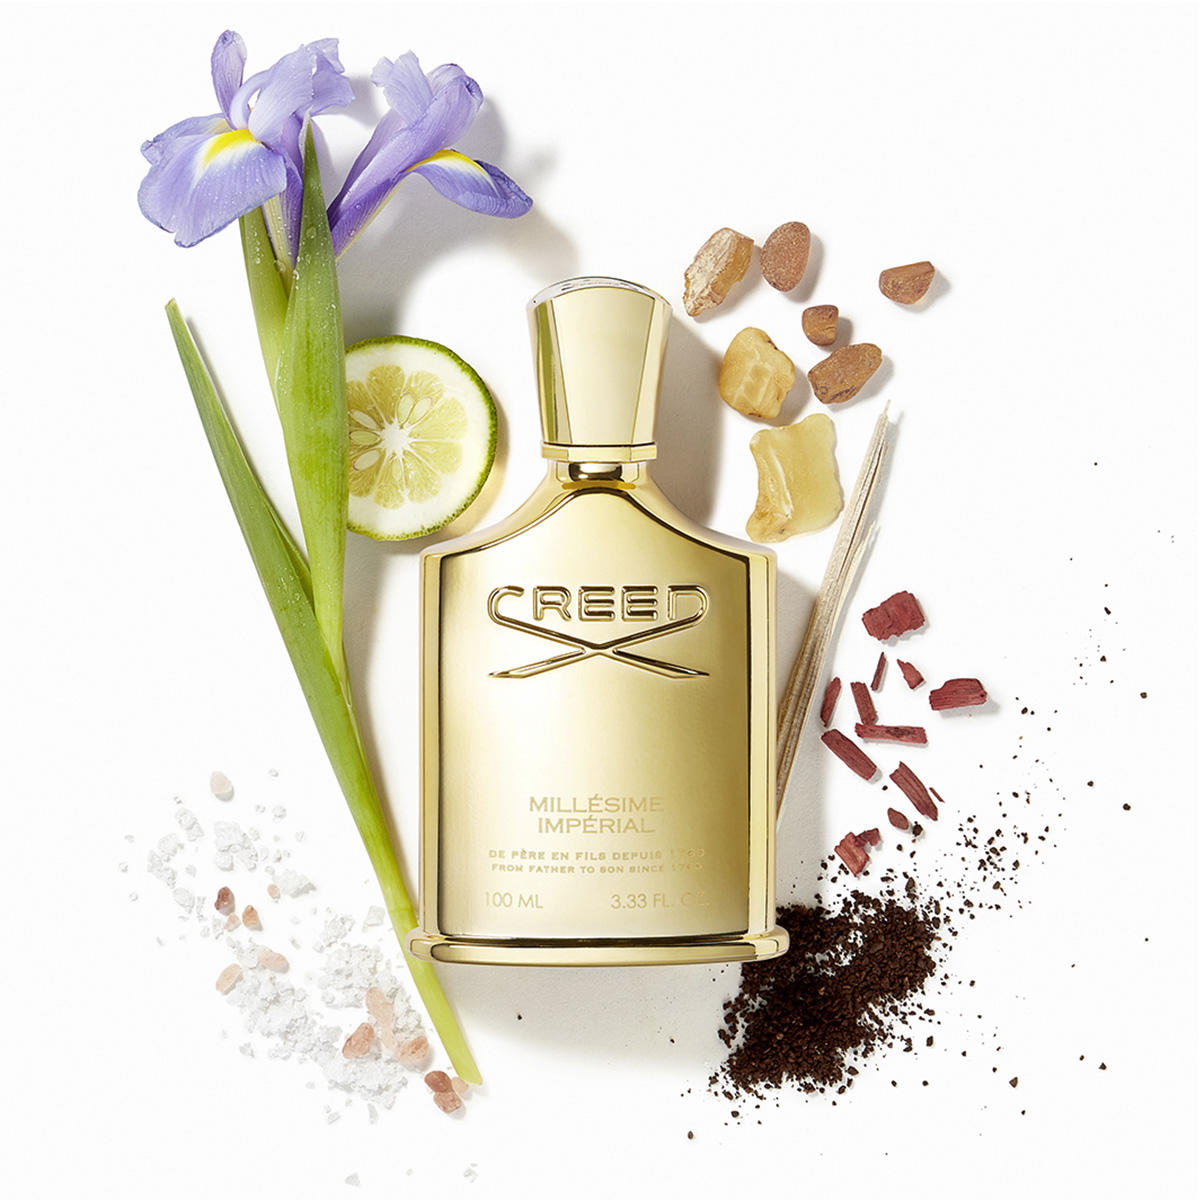 Creed Millesime Imperial for Women & Men Eau de Parfum 100 ml - 4